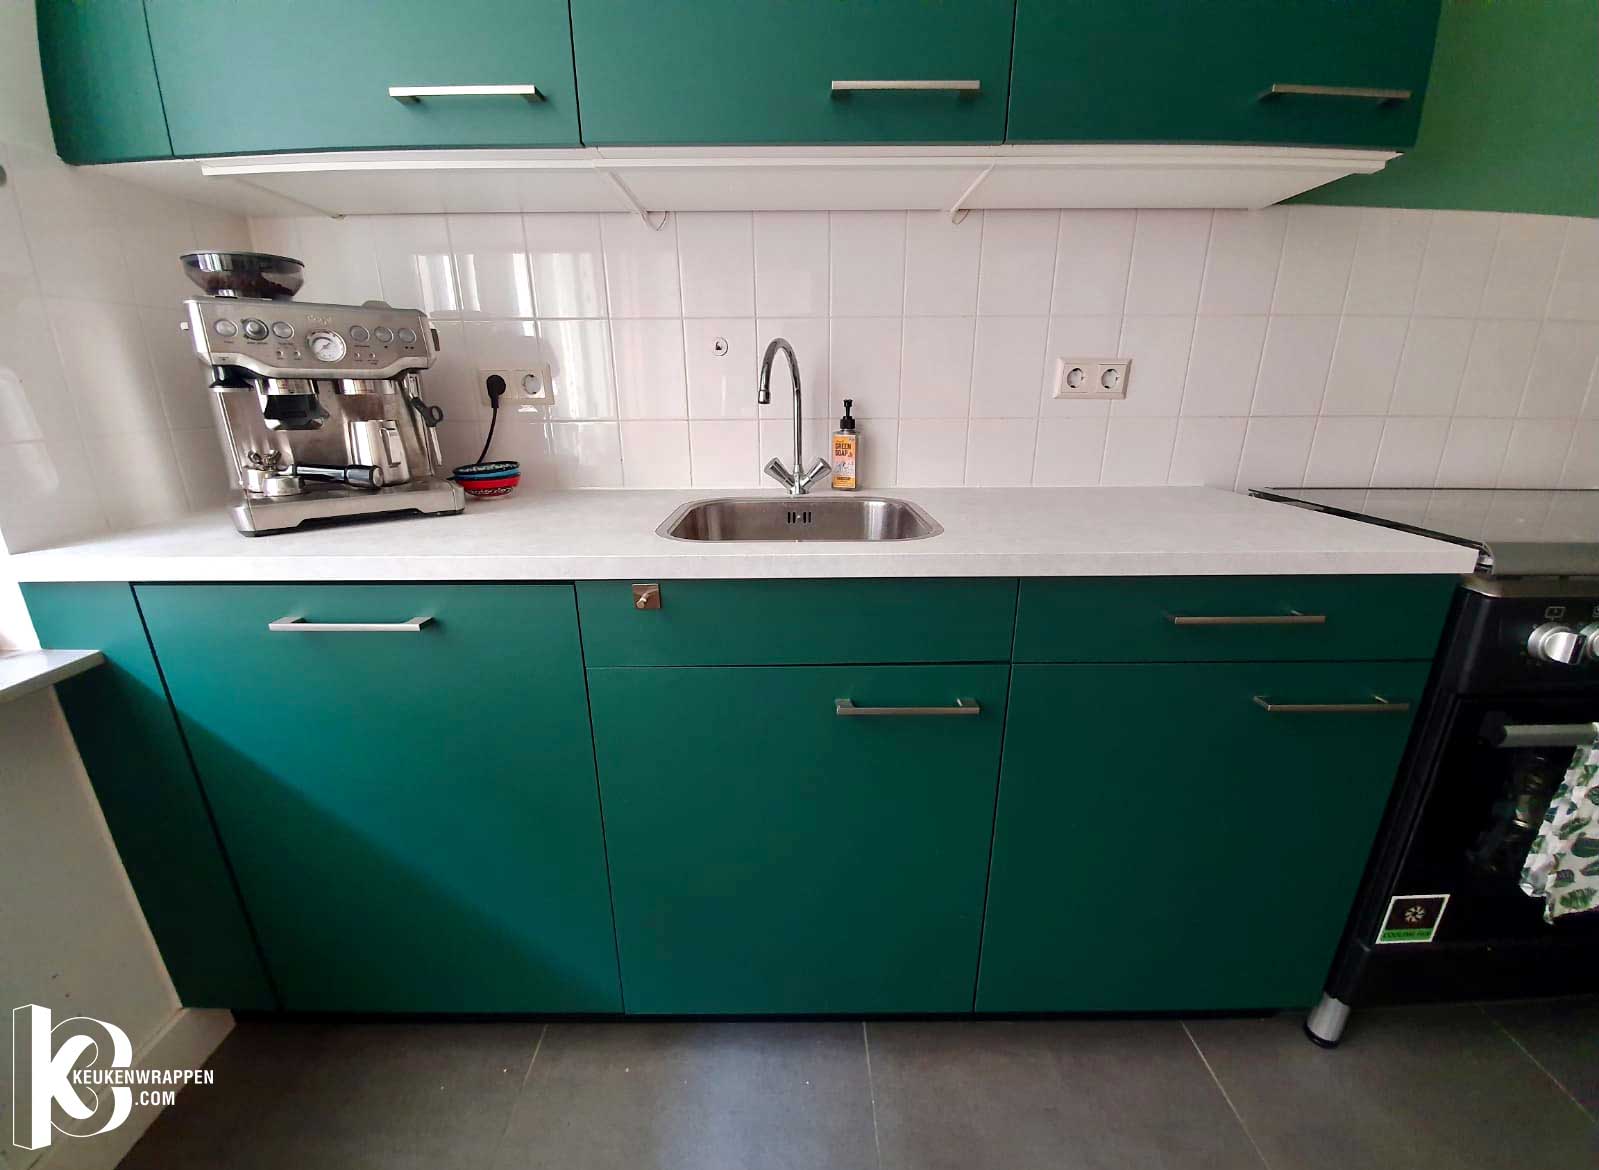 C-Design-keukenwrap-Groen-in-haarlem.jpg